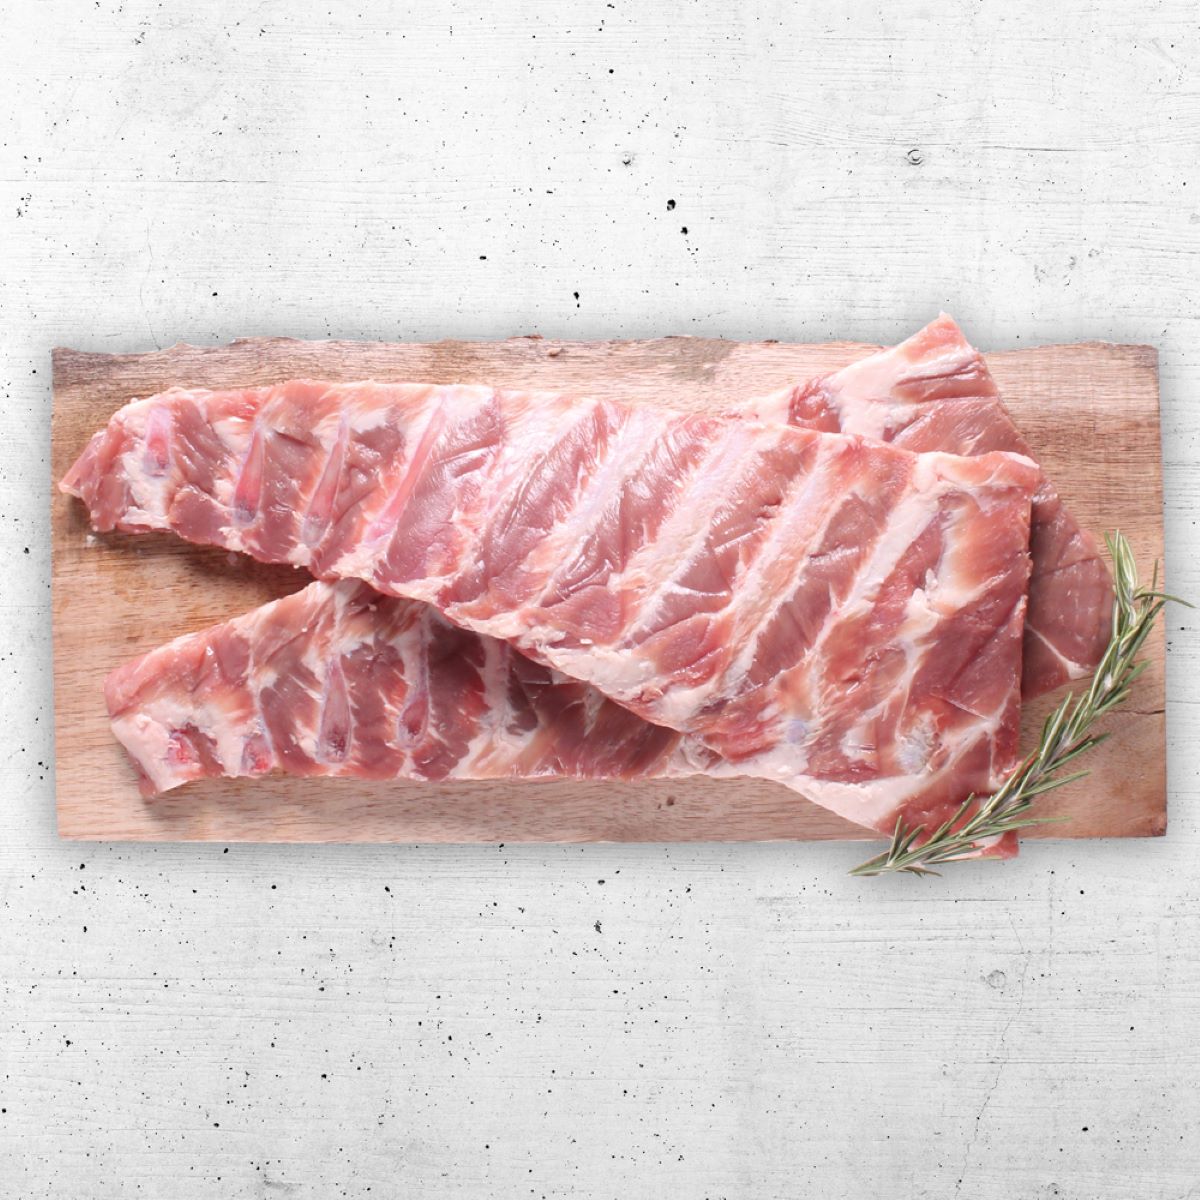 how-to-cut-pork-ribs